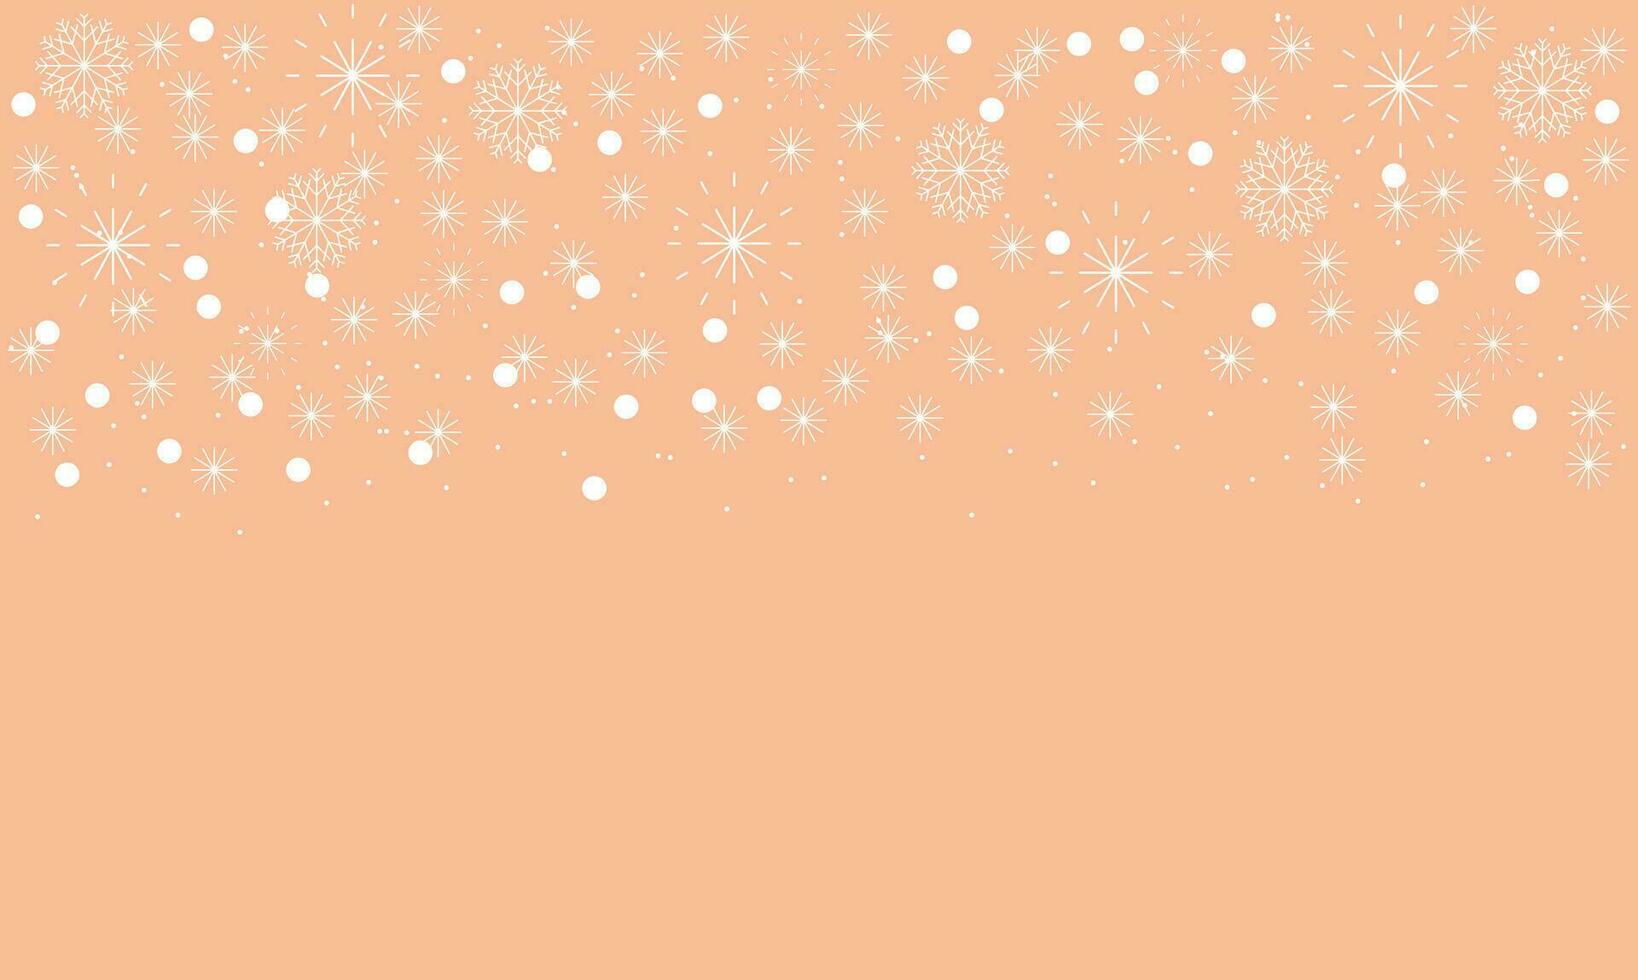 abstrakt jul persika ludd bakgrund med vit snöflingor vektor